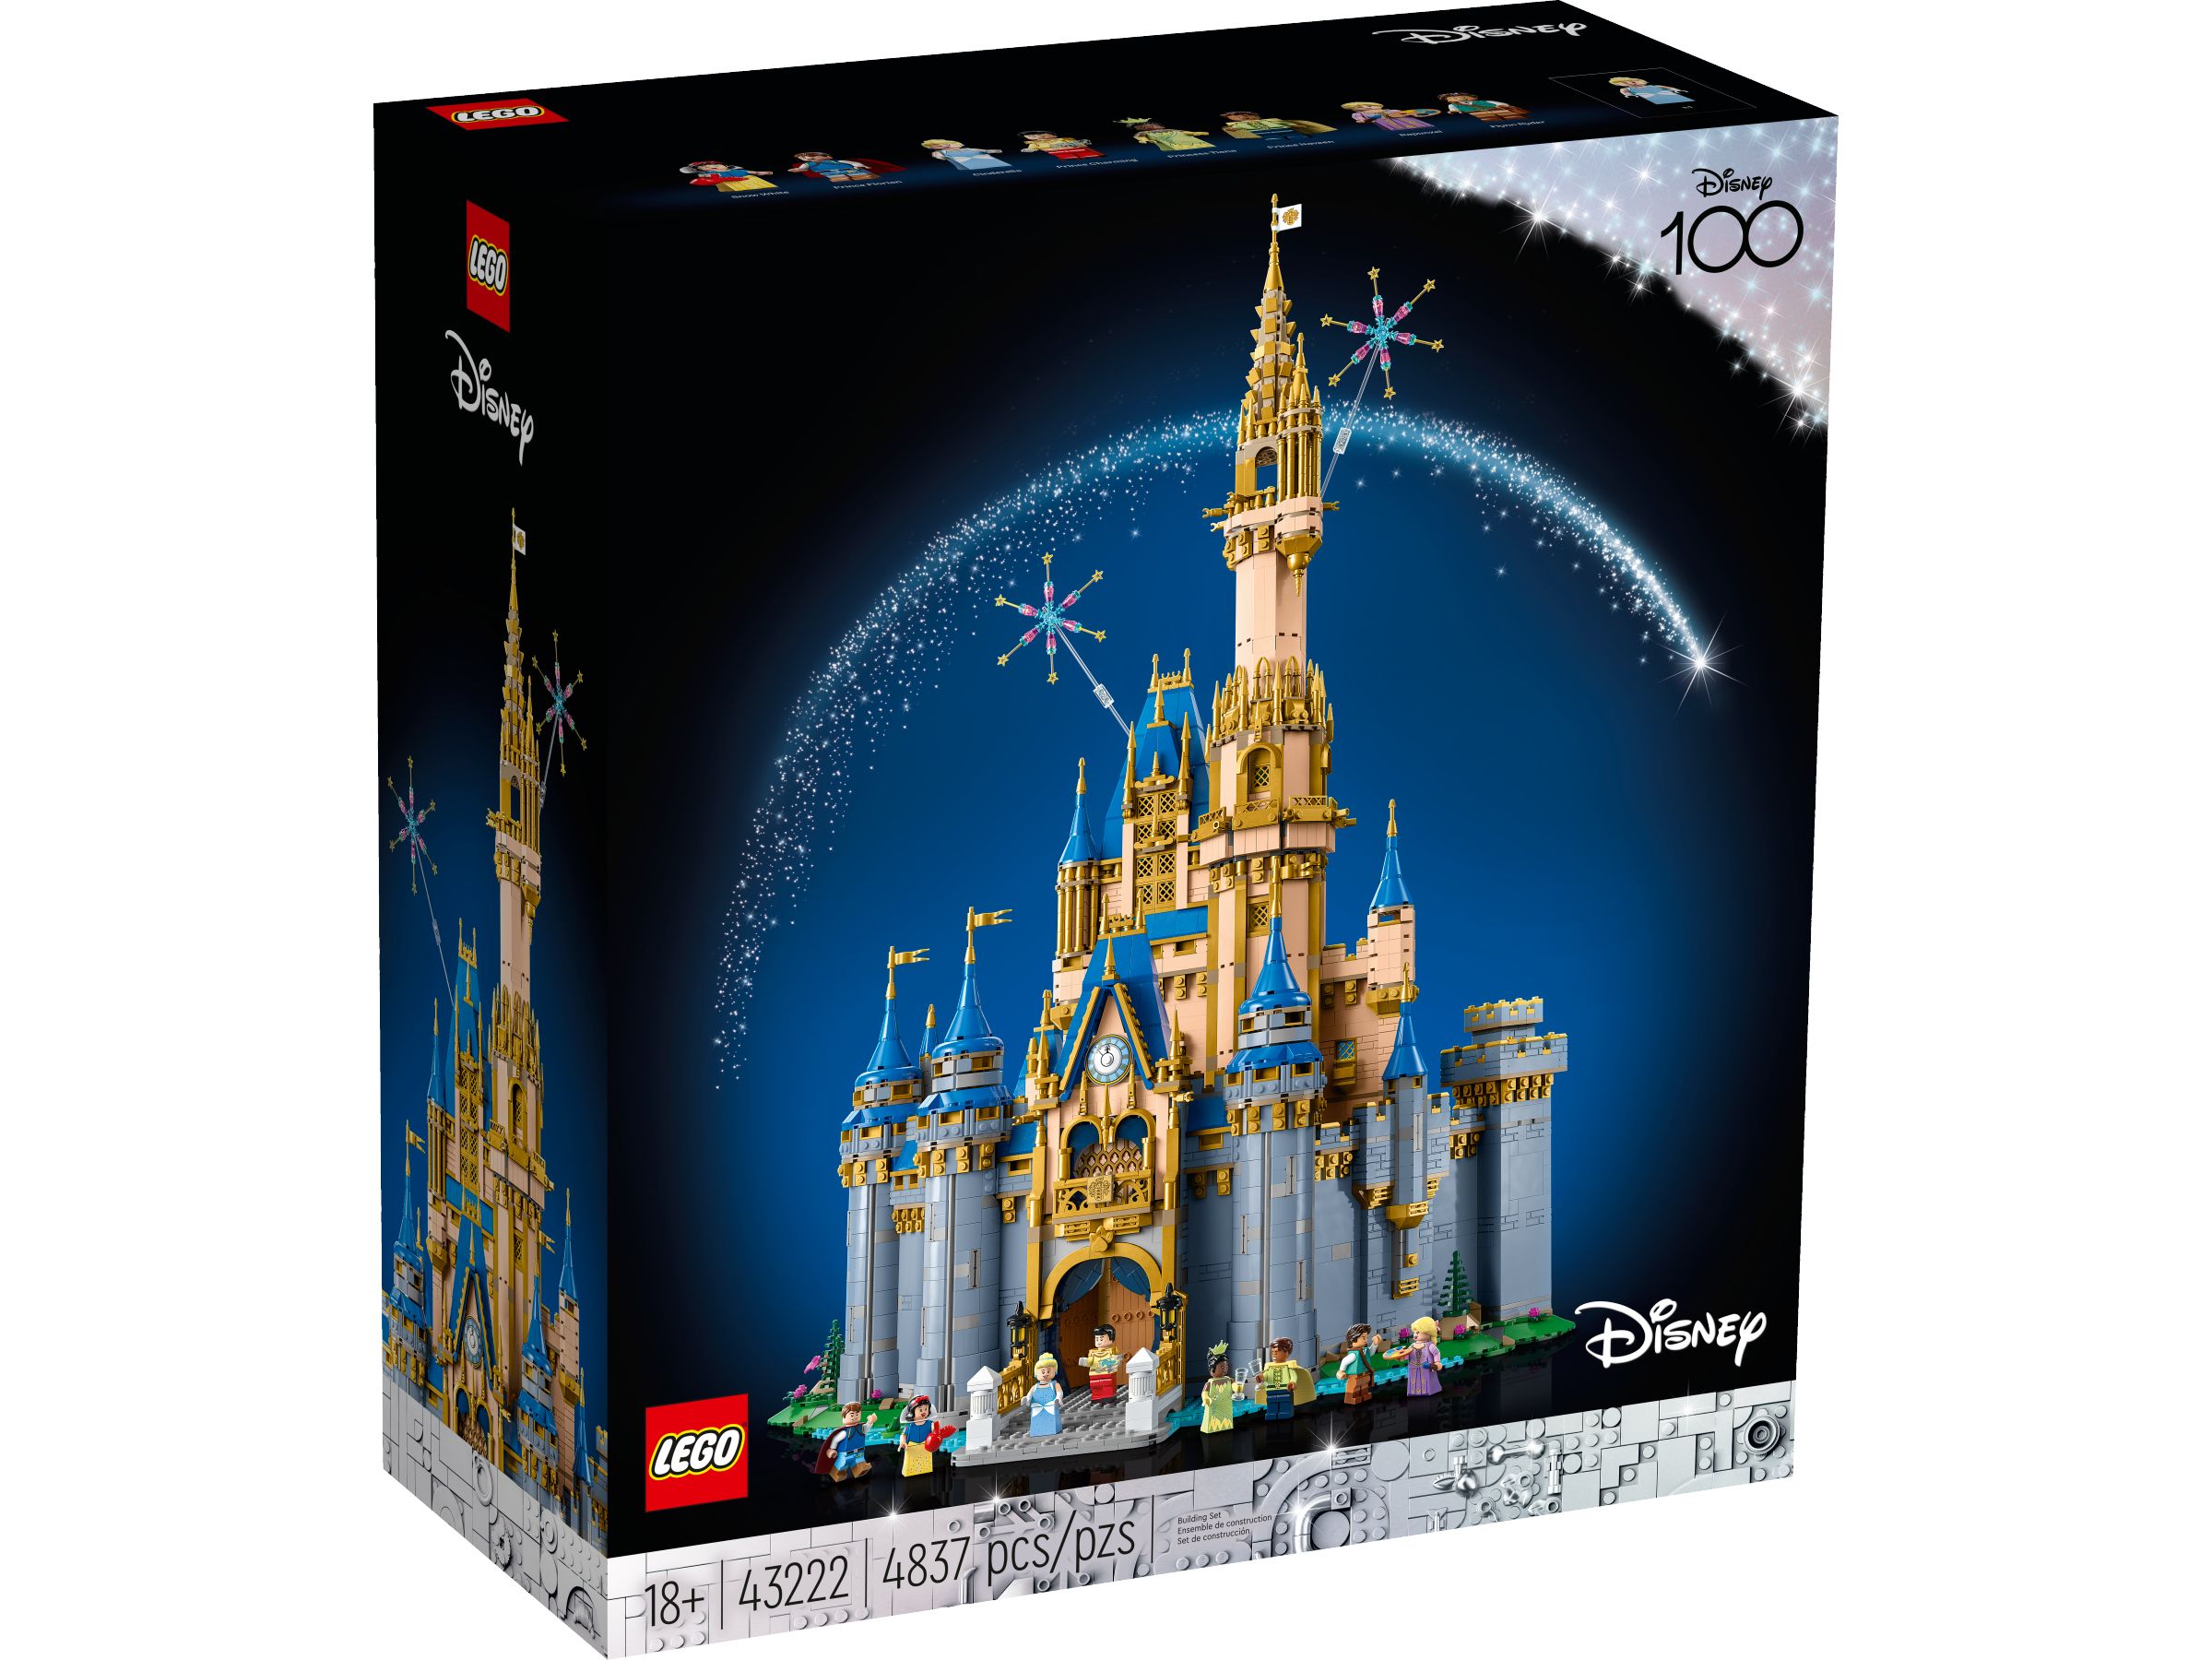 LEGO Disney 43222 Disney Schloss LEGO_43222_Box1_v39.jpg